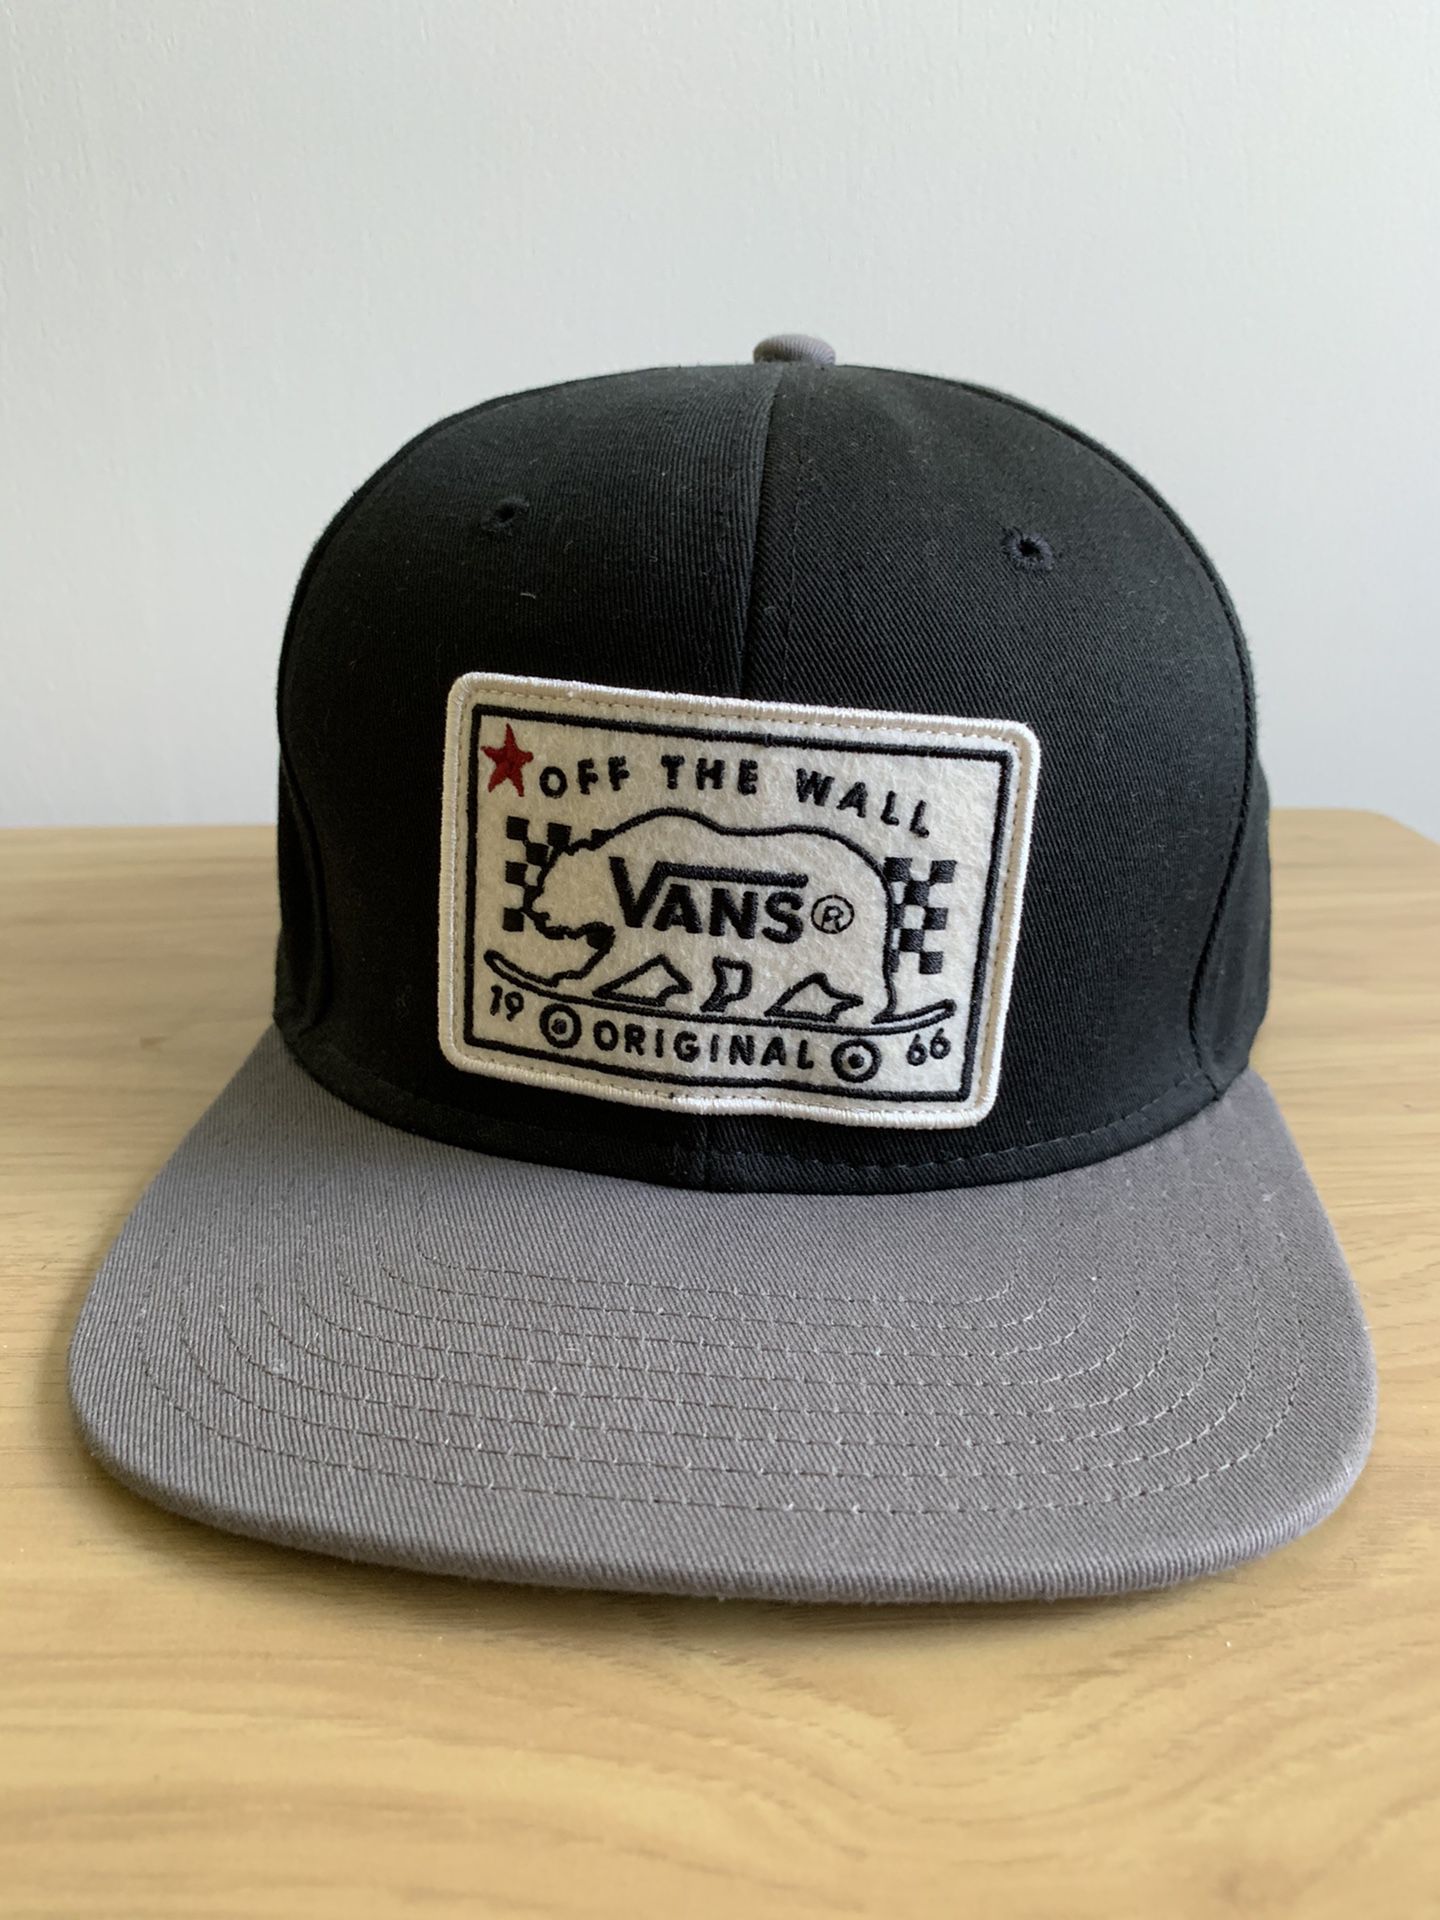 Retro Vans hat